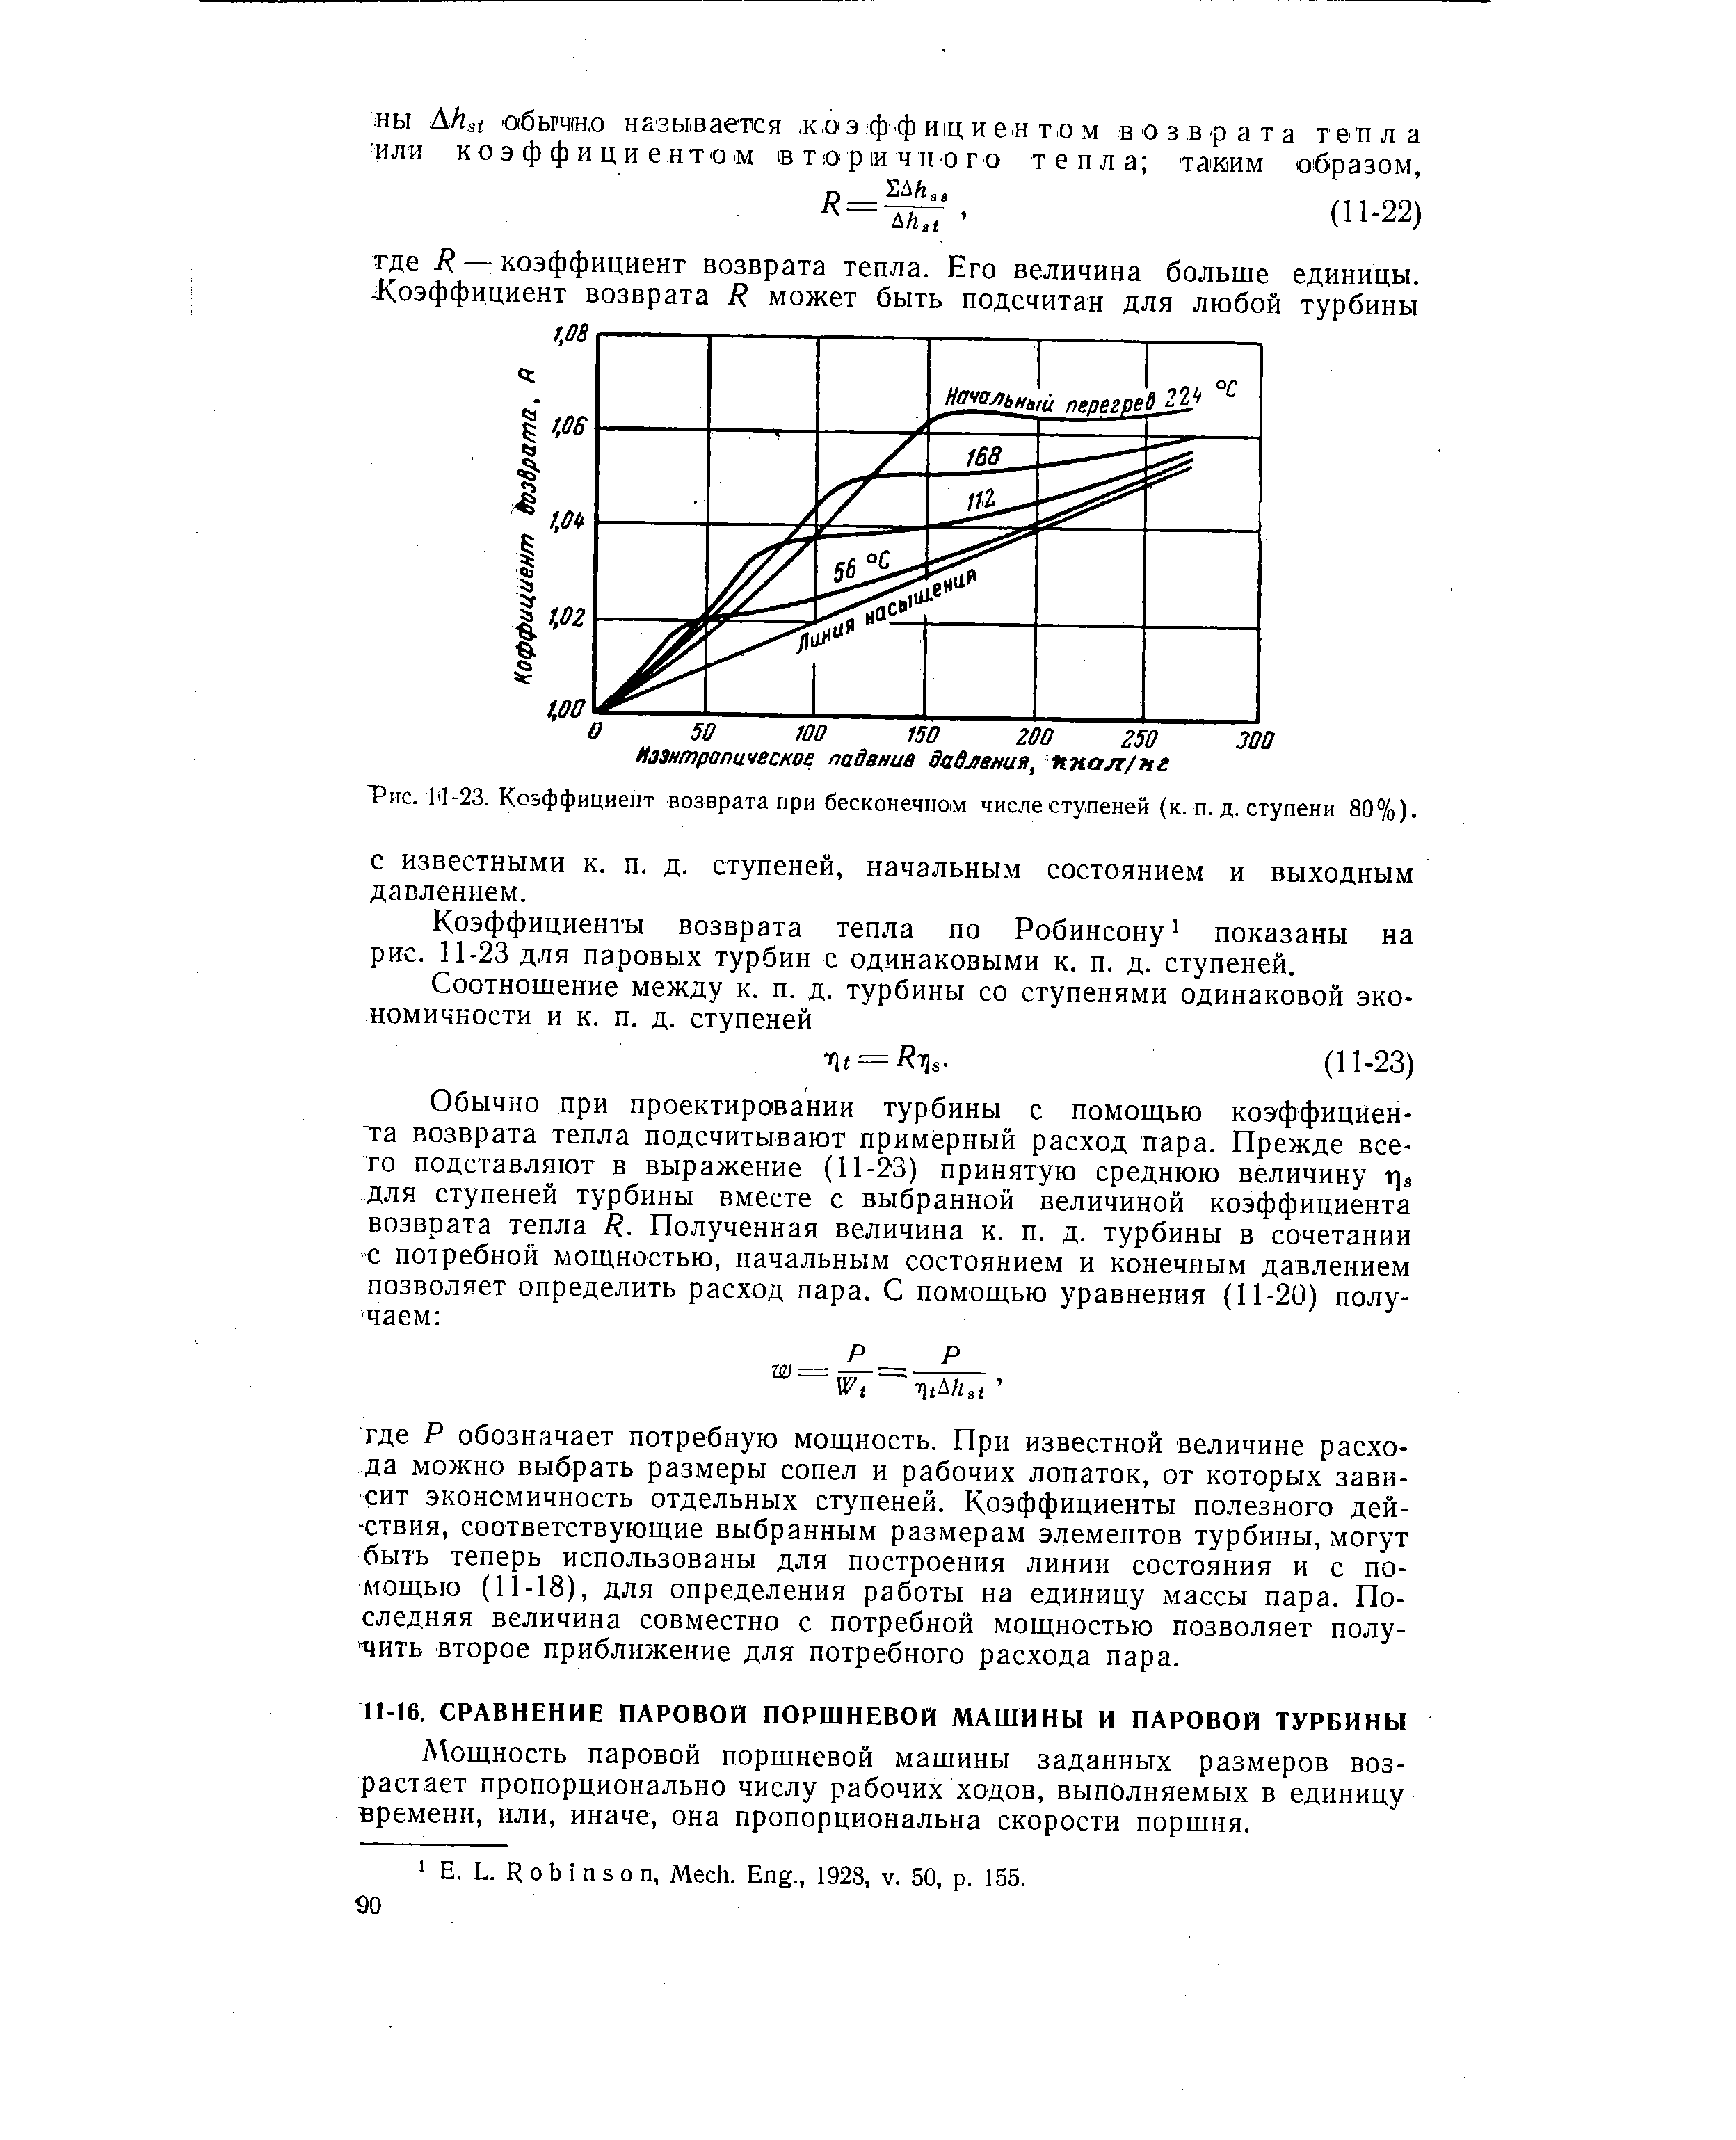 Рис. М-23. Коэффициент возврата при бесконечном <a href="/info/187129">числе ступеней</a> (к. п. д. ступени 80°/о).
